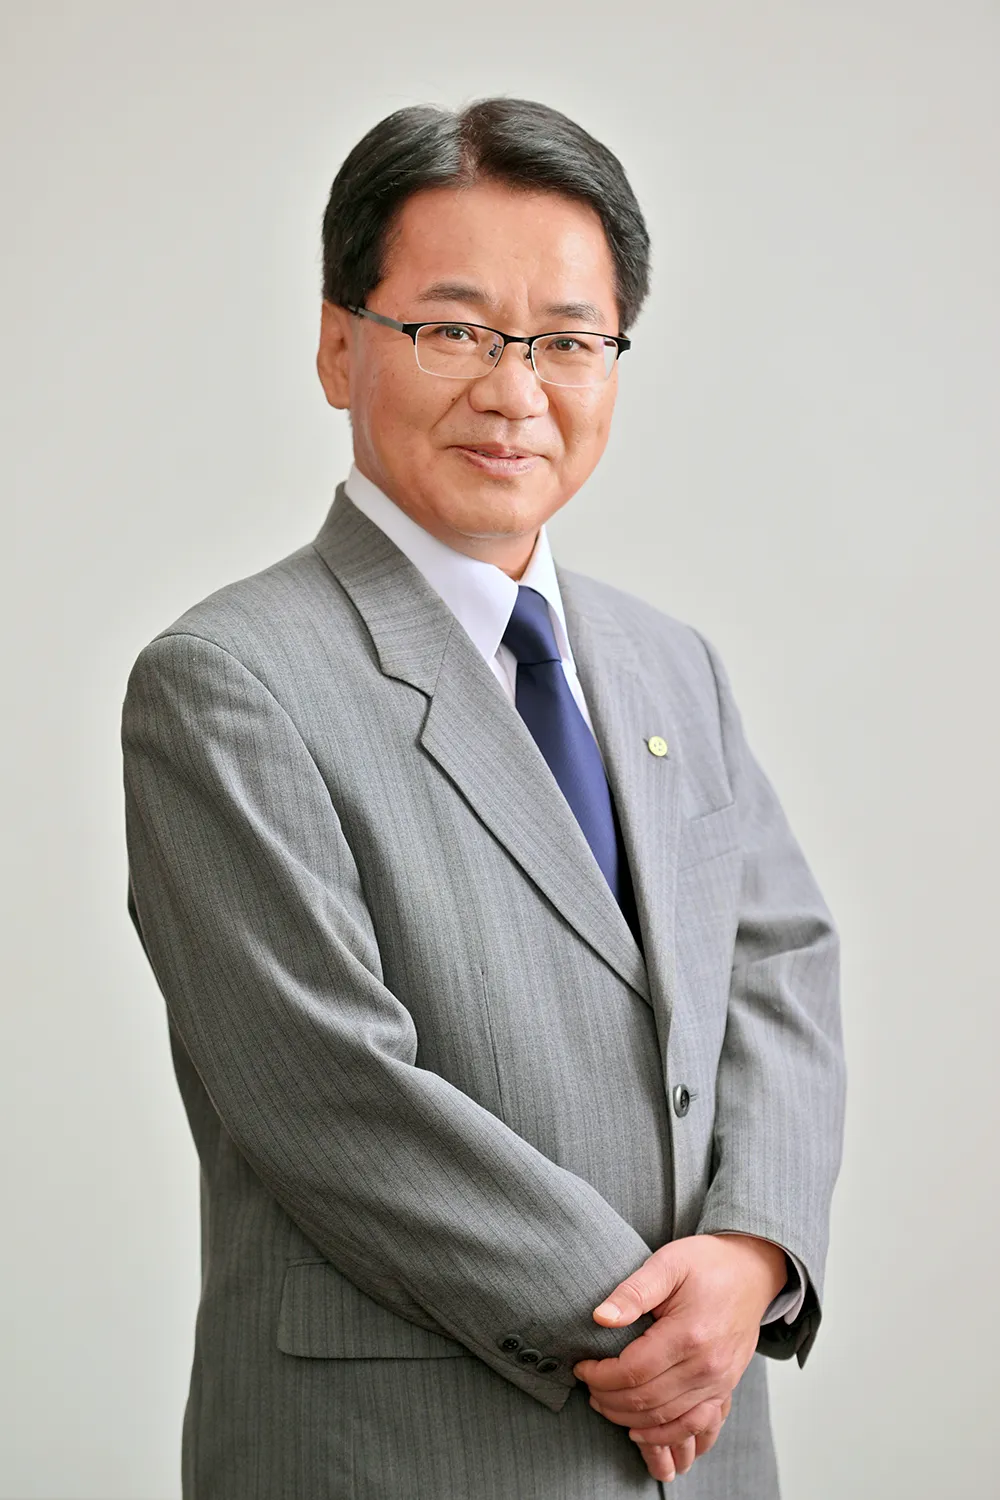 President Ohara